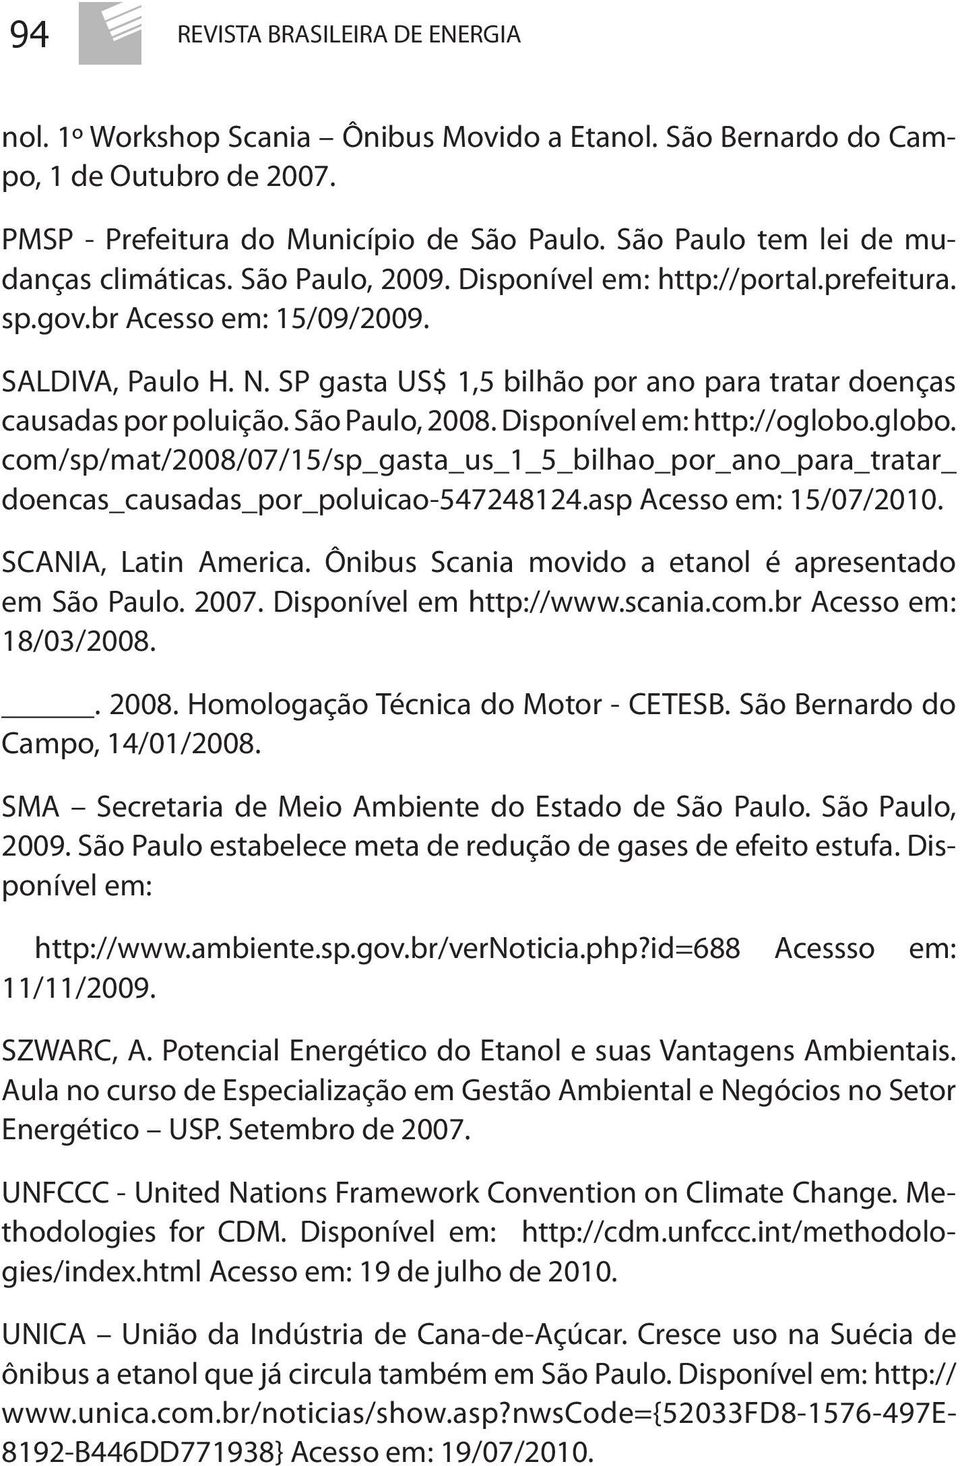 SP gasta US$ 1,5 bilhão por ano para tratar doenças causadas por poluição. São Paulo, 2008. Disponível em: http://oglobo.